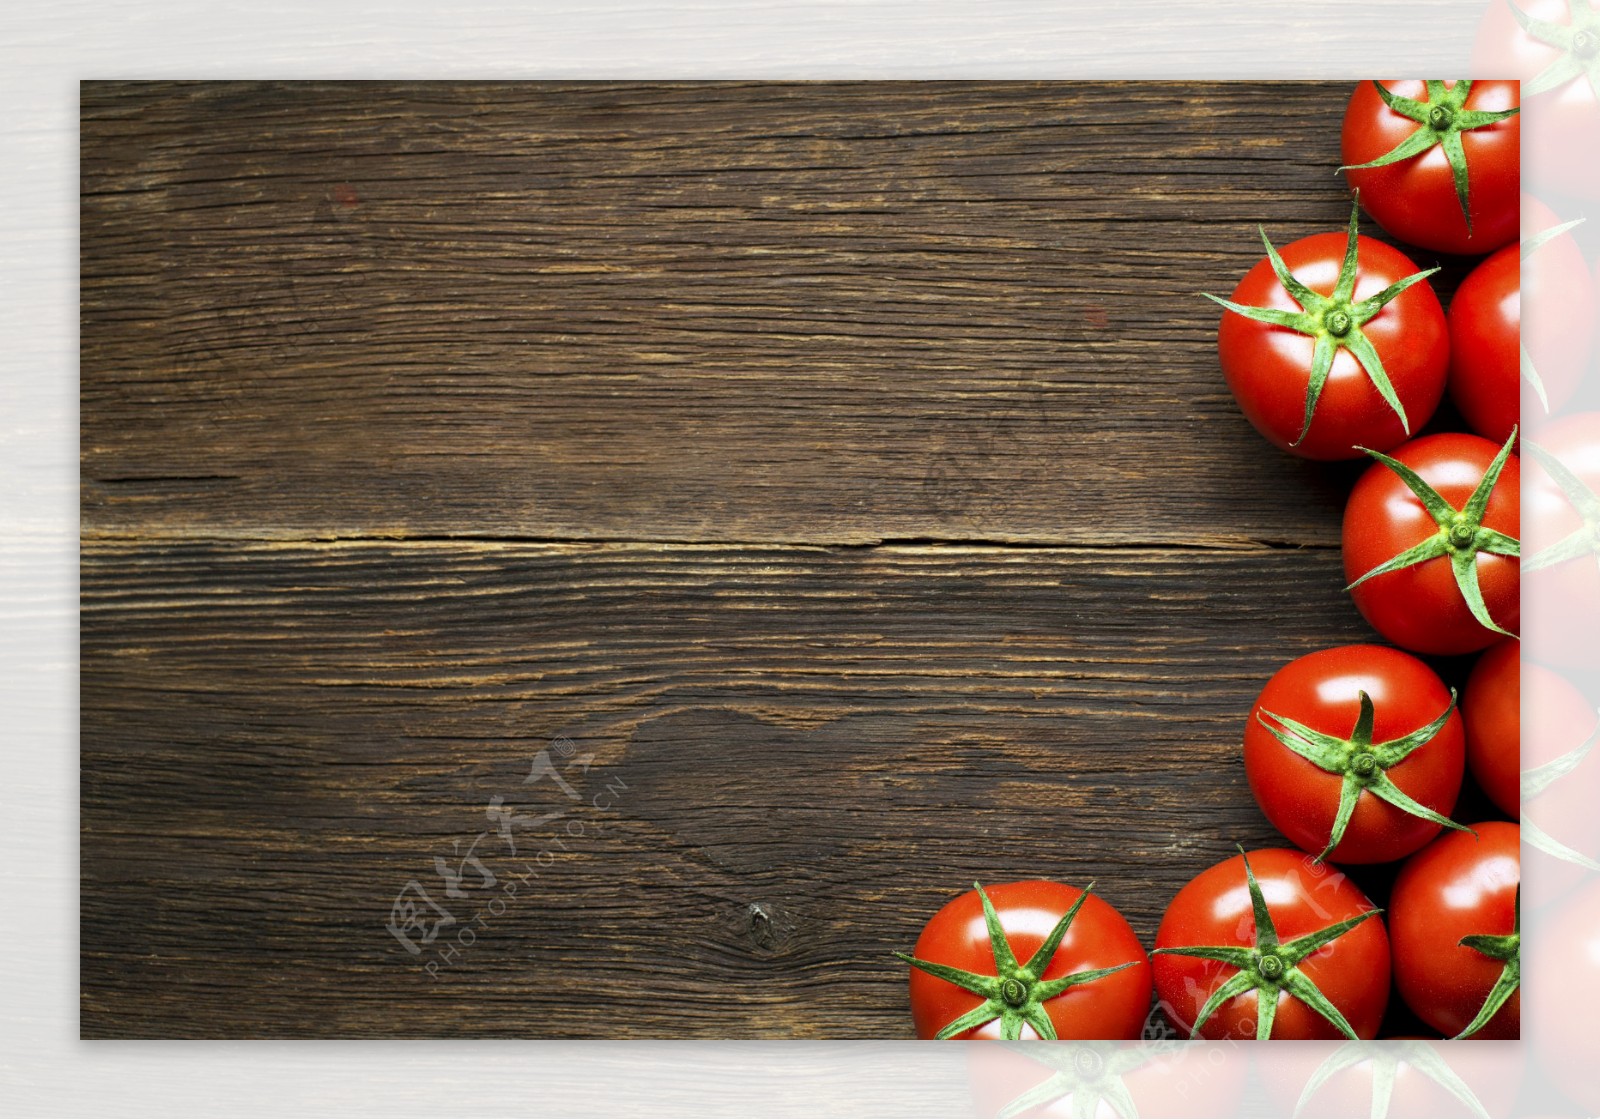 旧木板上的西红柿图片